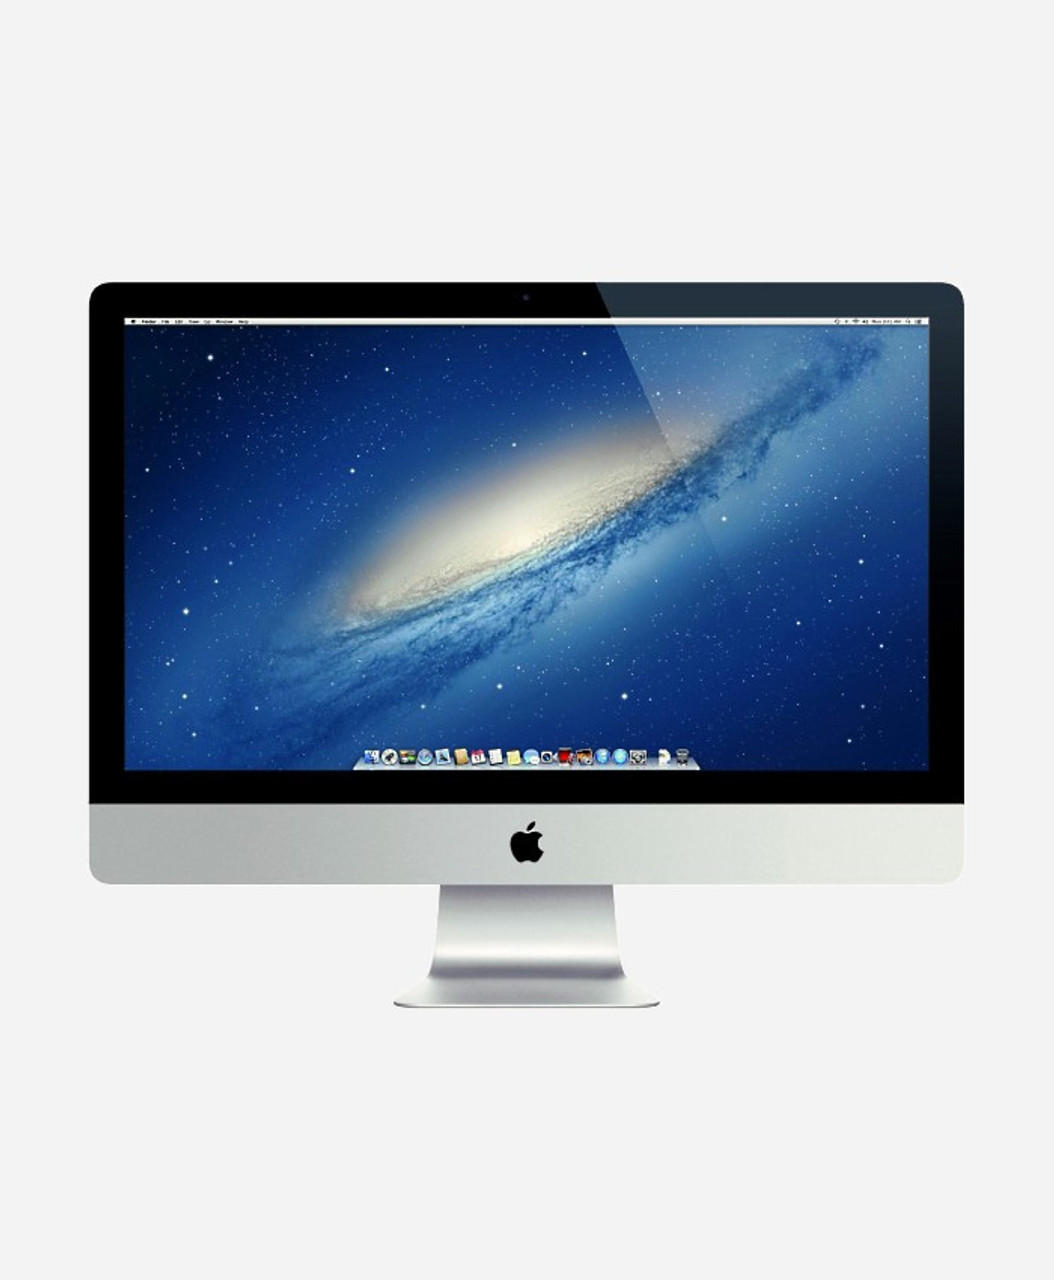 Used Apple iMac (Aluminum) 3.1GHZ Quad Core i7 (Late 2013) ME087LL/A-BTO - GainSaver